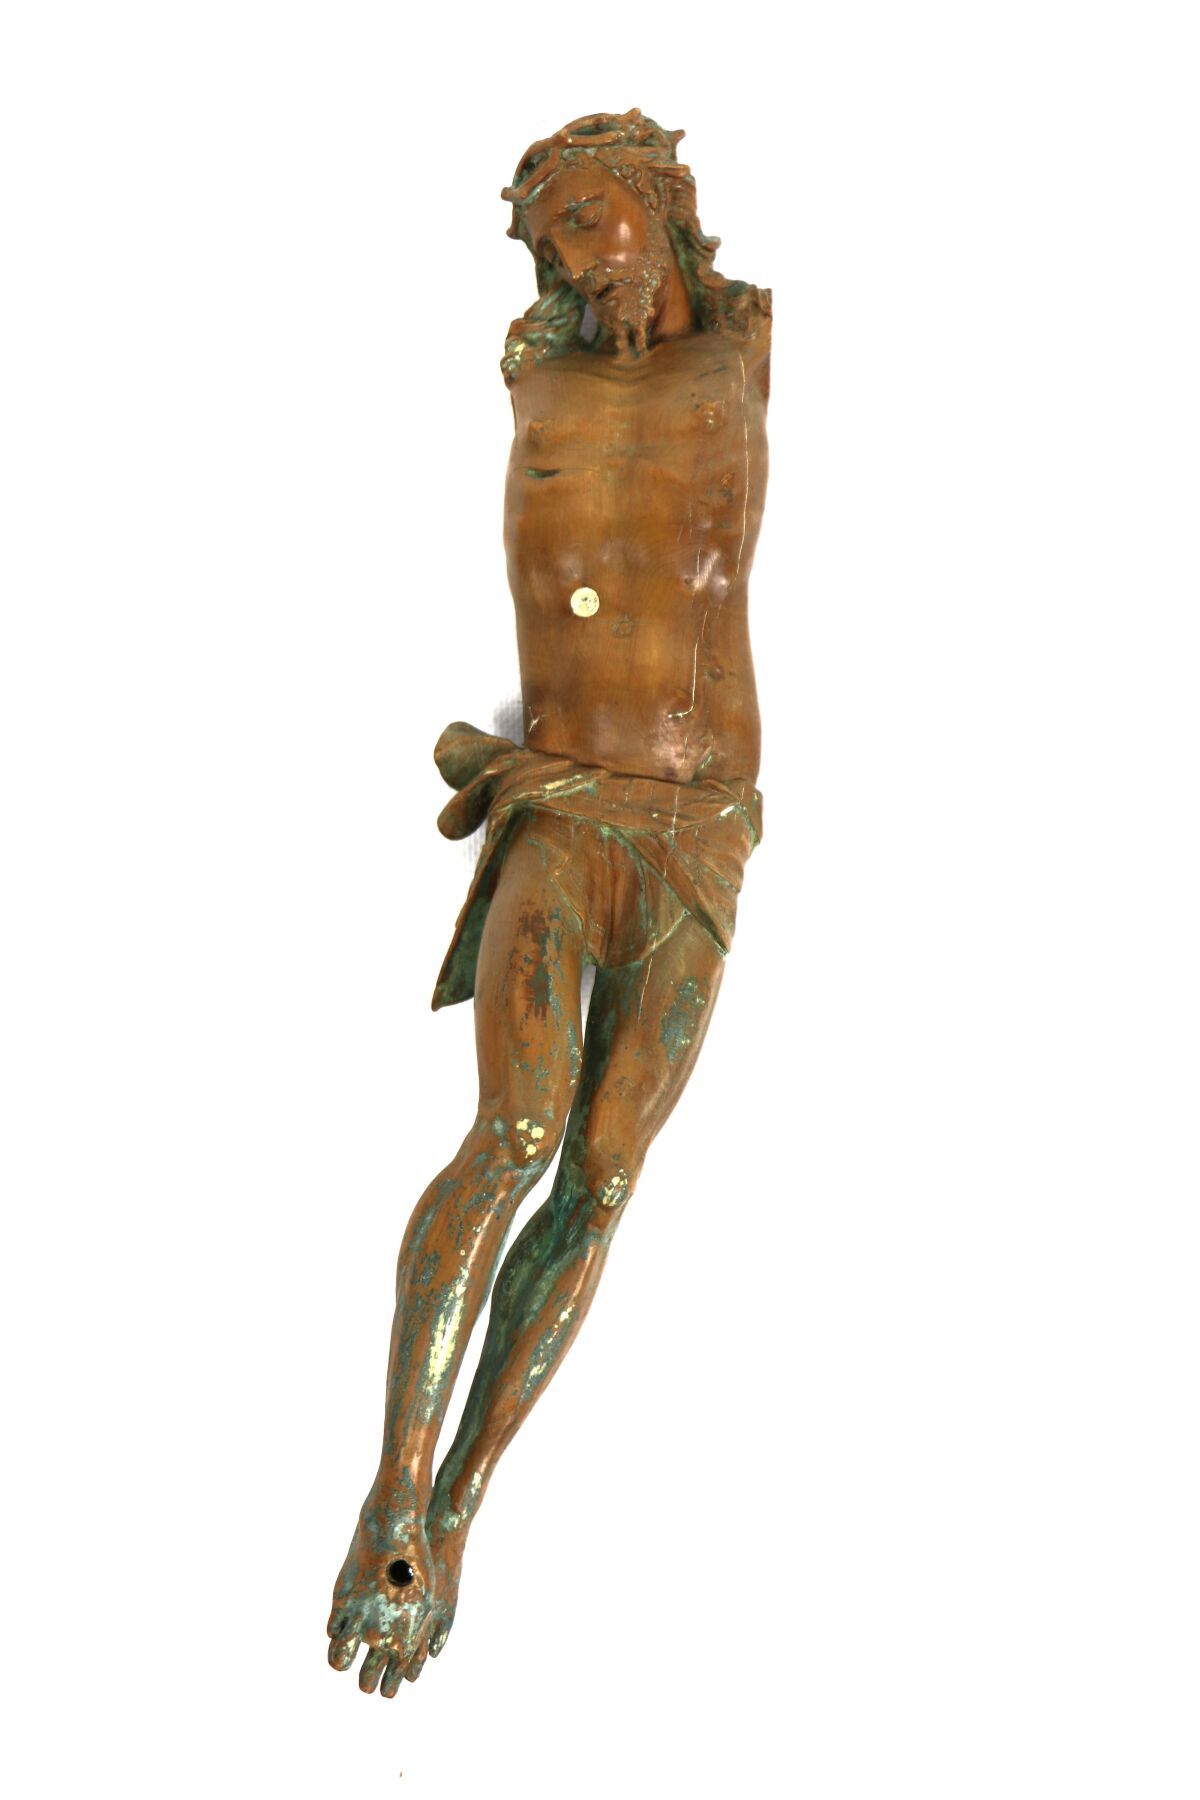 Null Christus aus Weichholz geschnitzt.
Volkskunstarbeit aus dem 17. Jahrhundert&hellip;